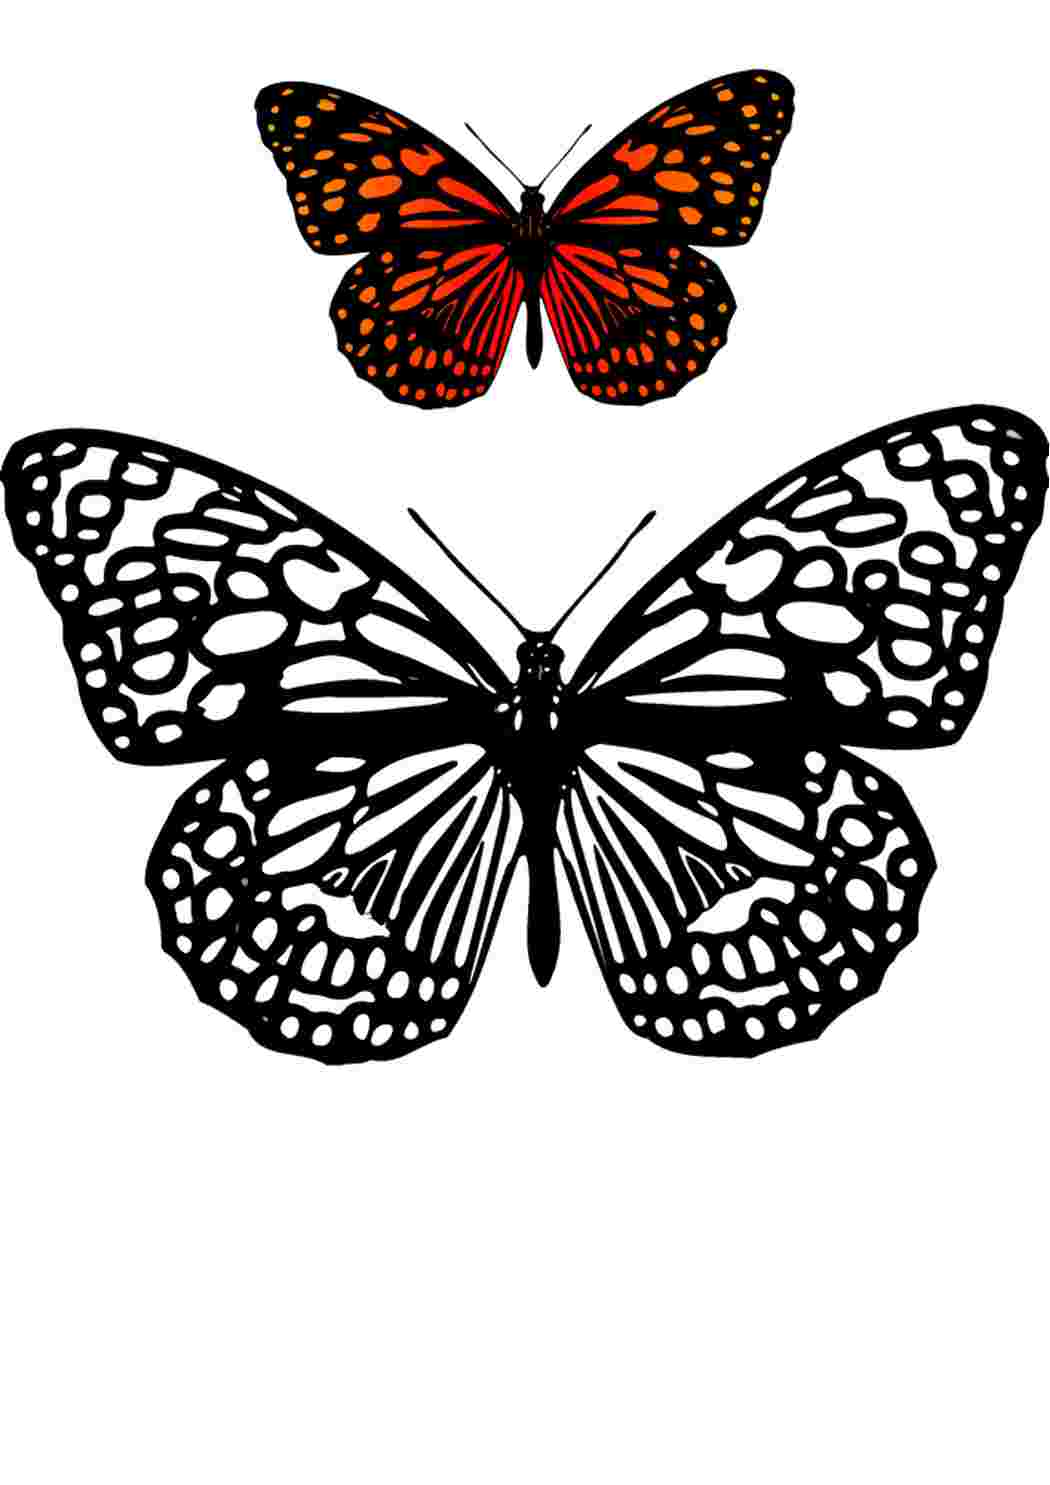 Четыре красная бабочка, изолированных на белом фоне